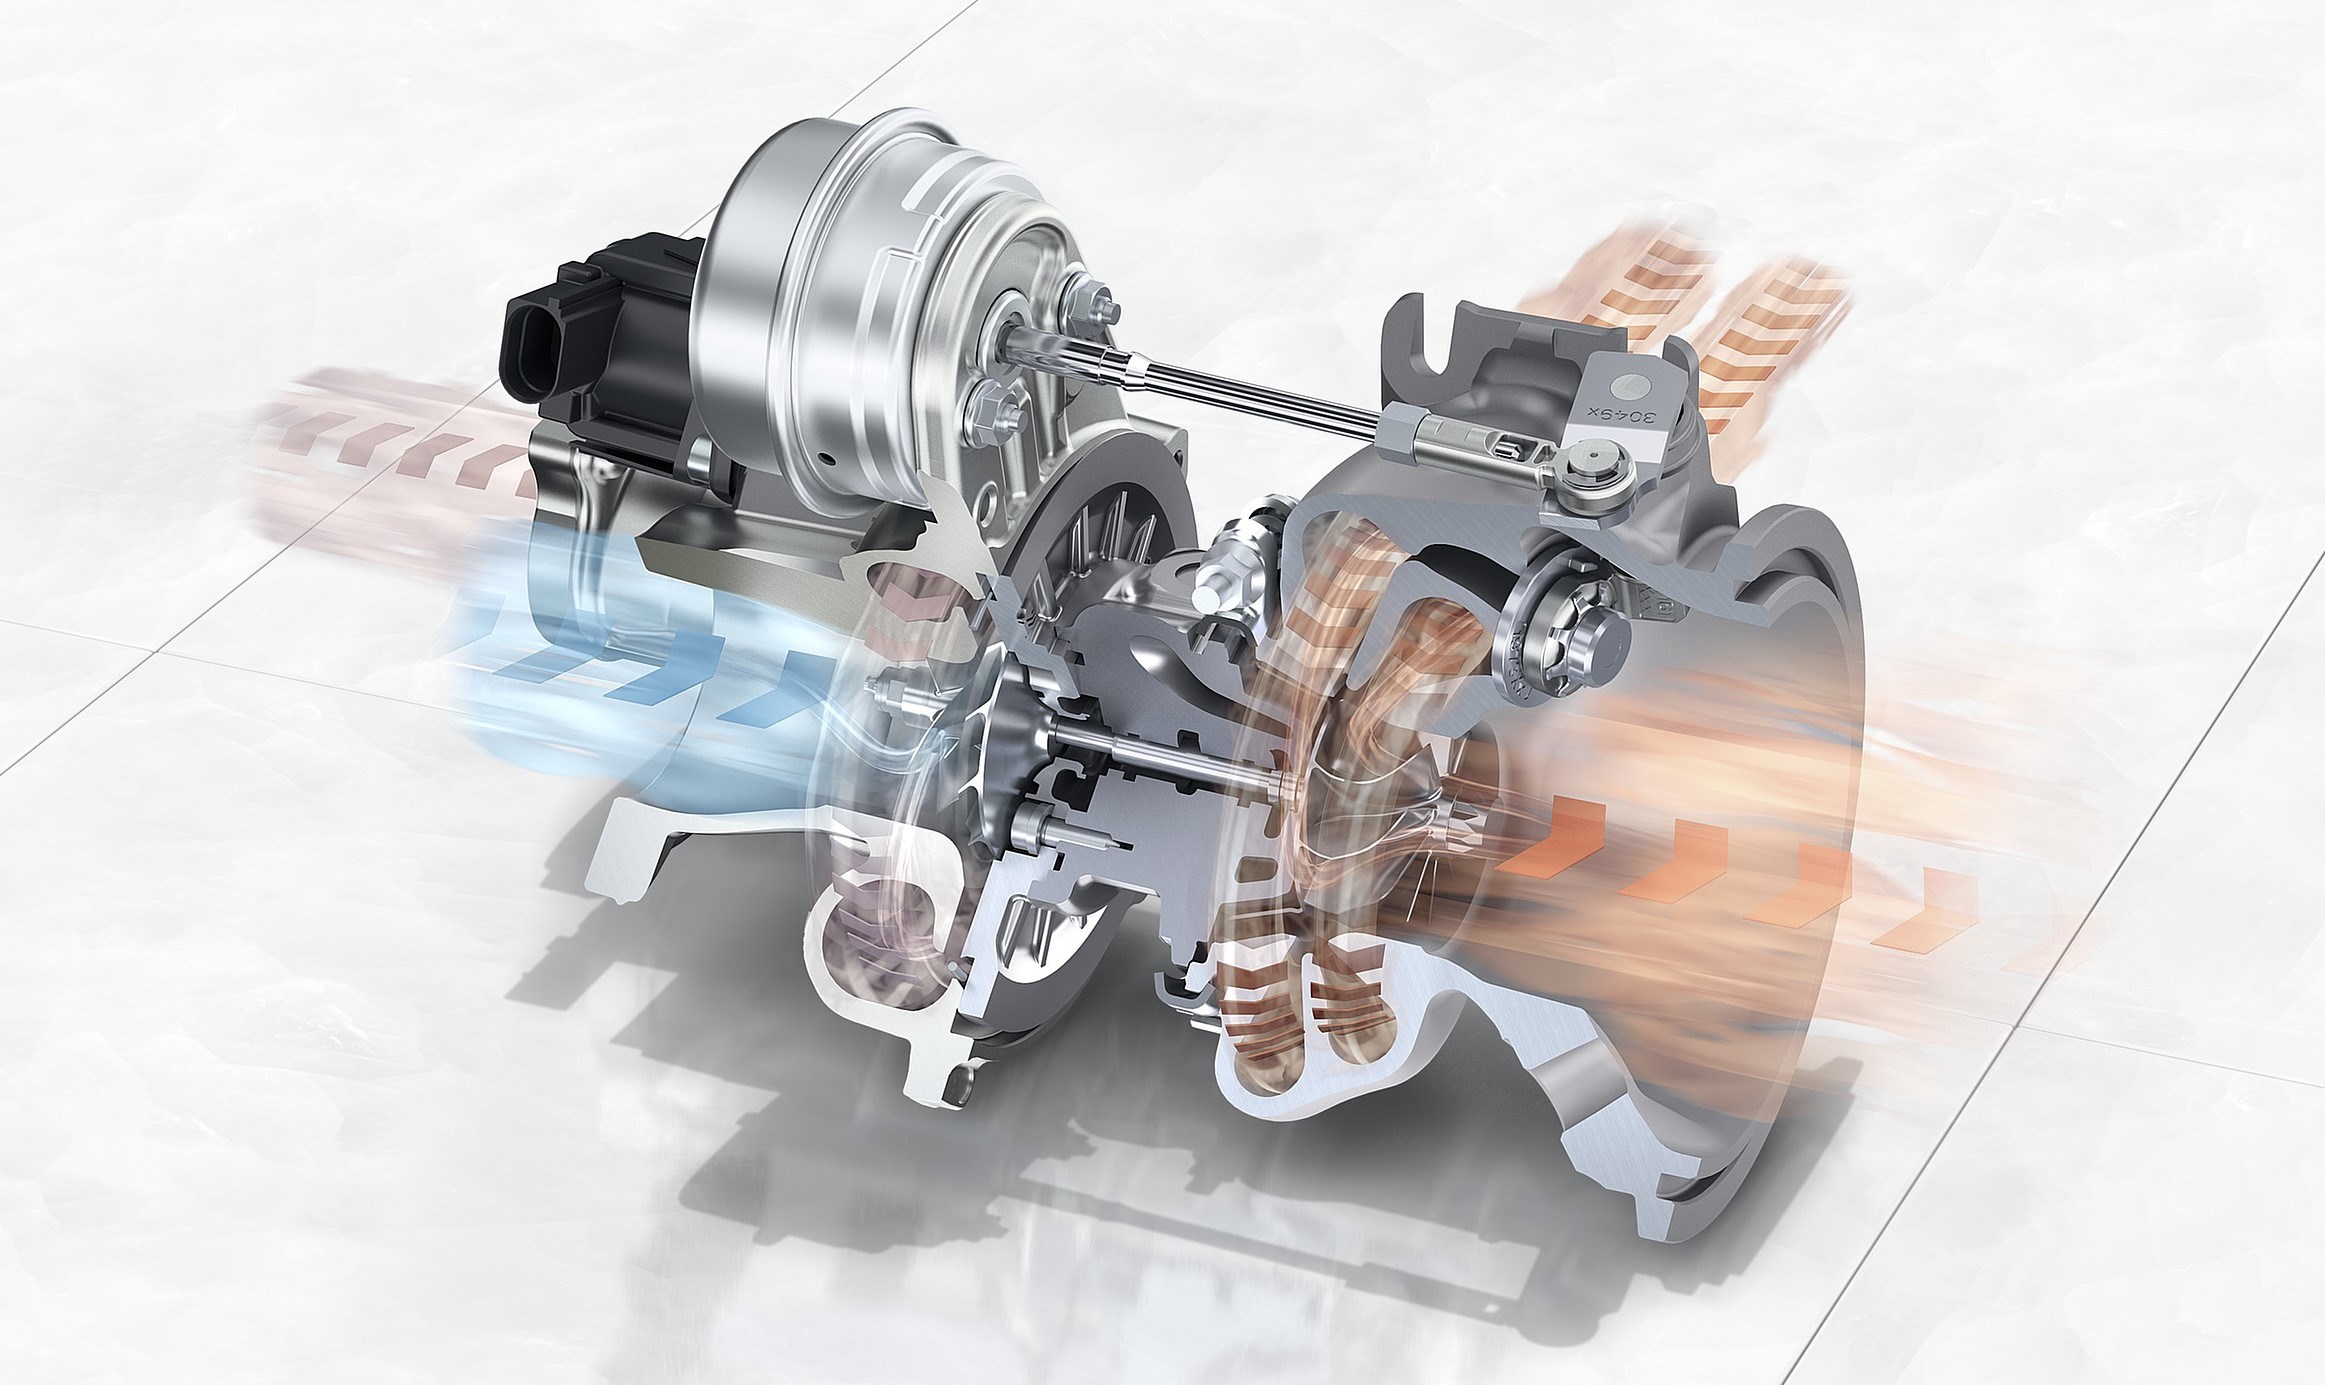 宾利飞驰v8发动机公布技术细节升功率超过137马力配备闭缸技术